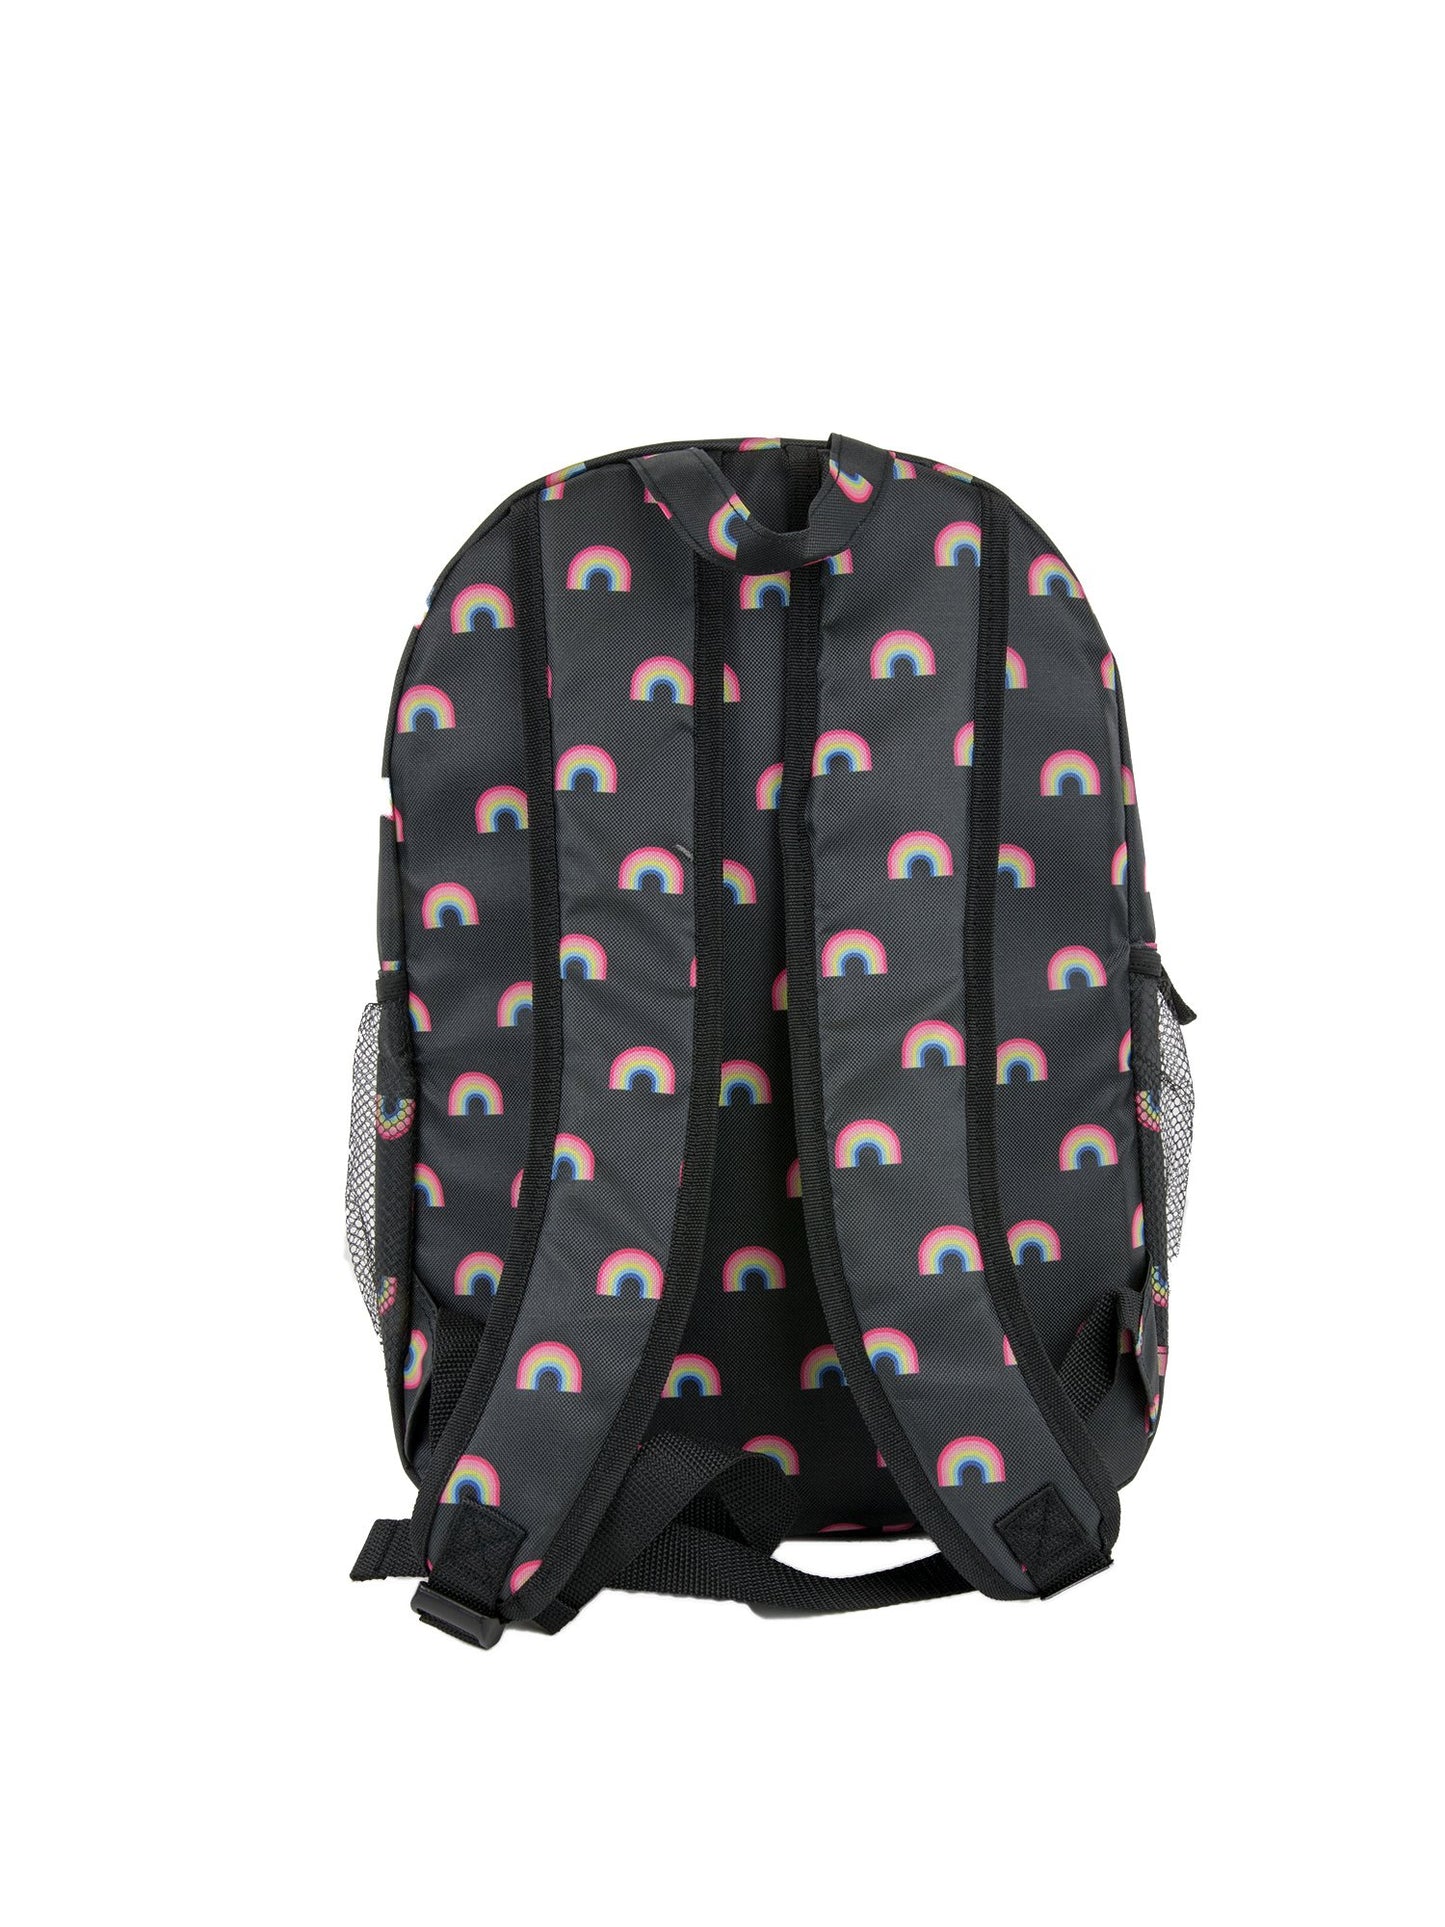 Backpack - Double Zipper w/ Side Pockets - Under1Sky